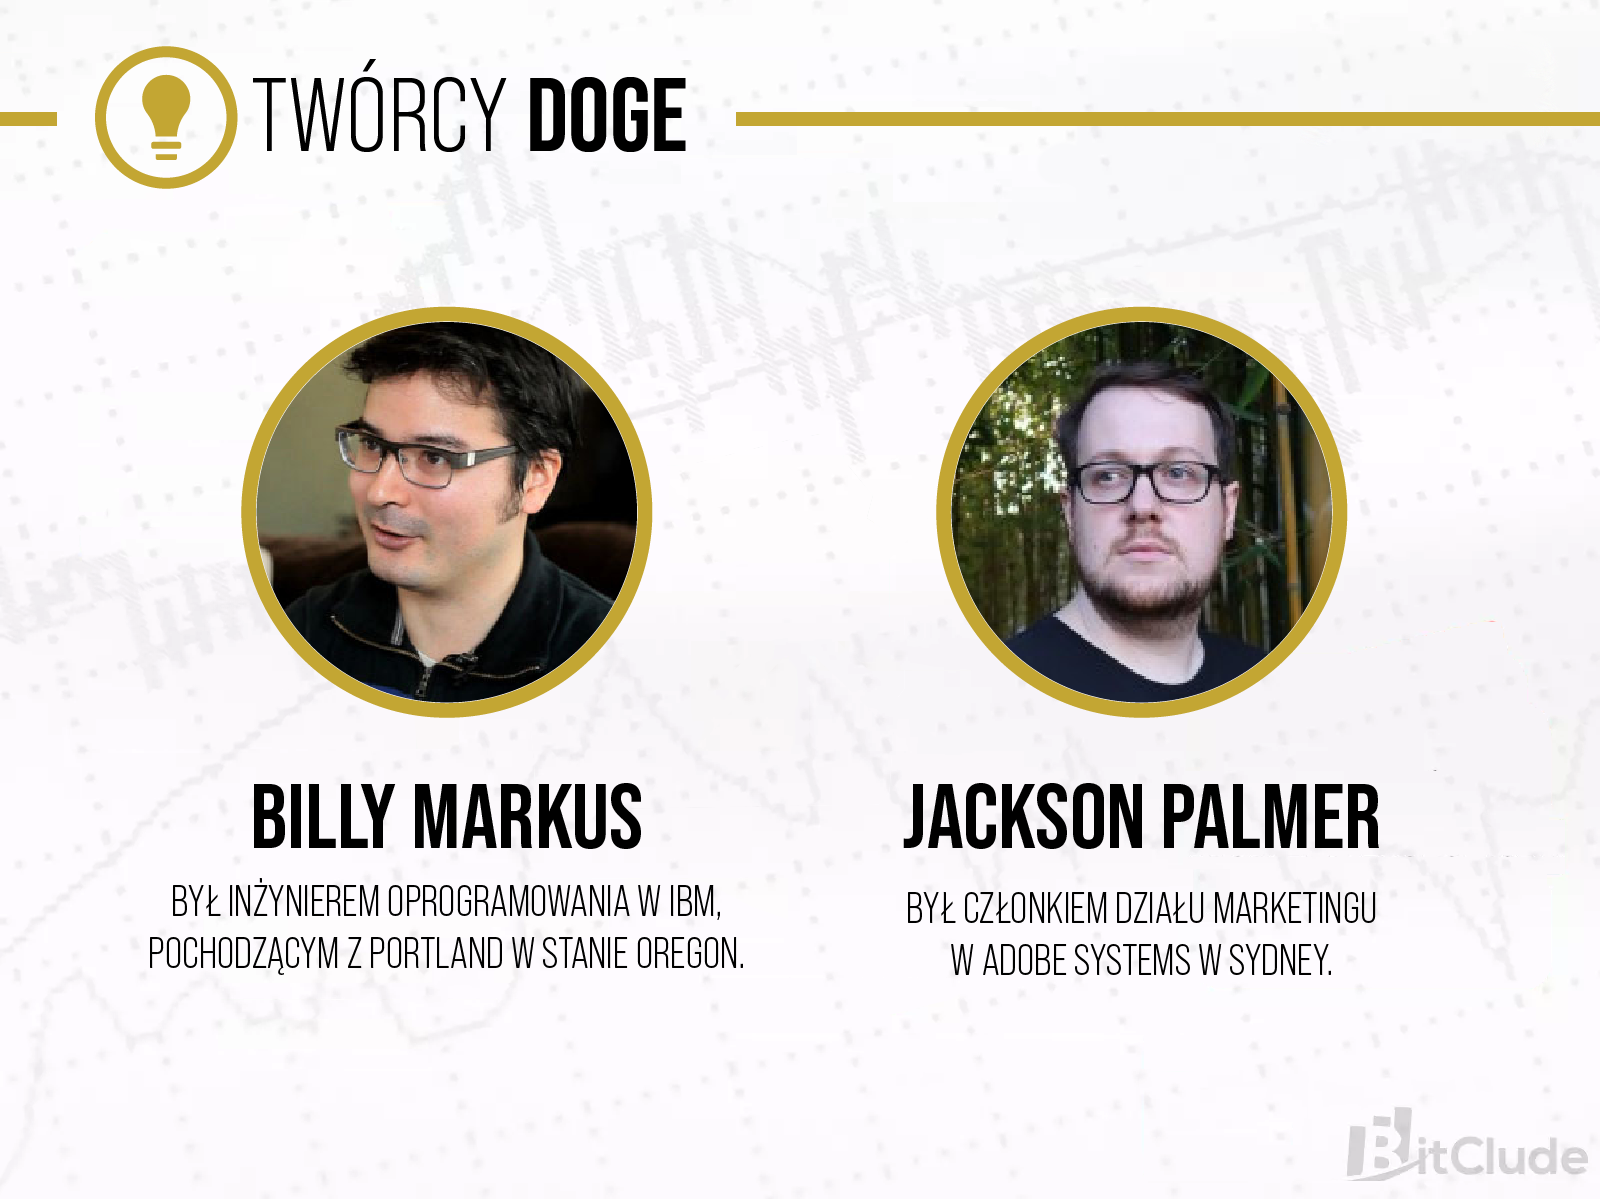 Twórcy Dogecoin to Billy Markus i Jackson Palmer